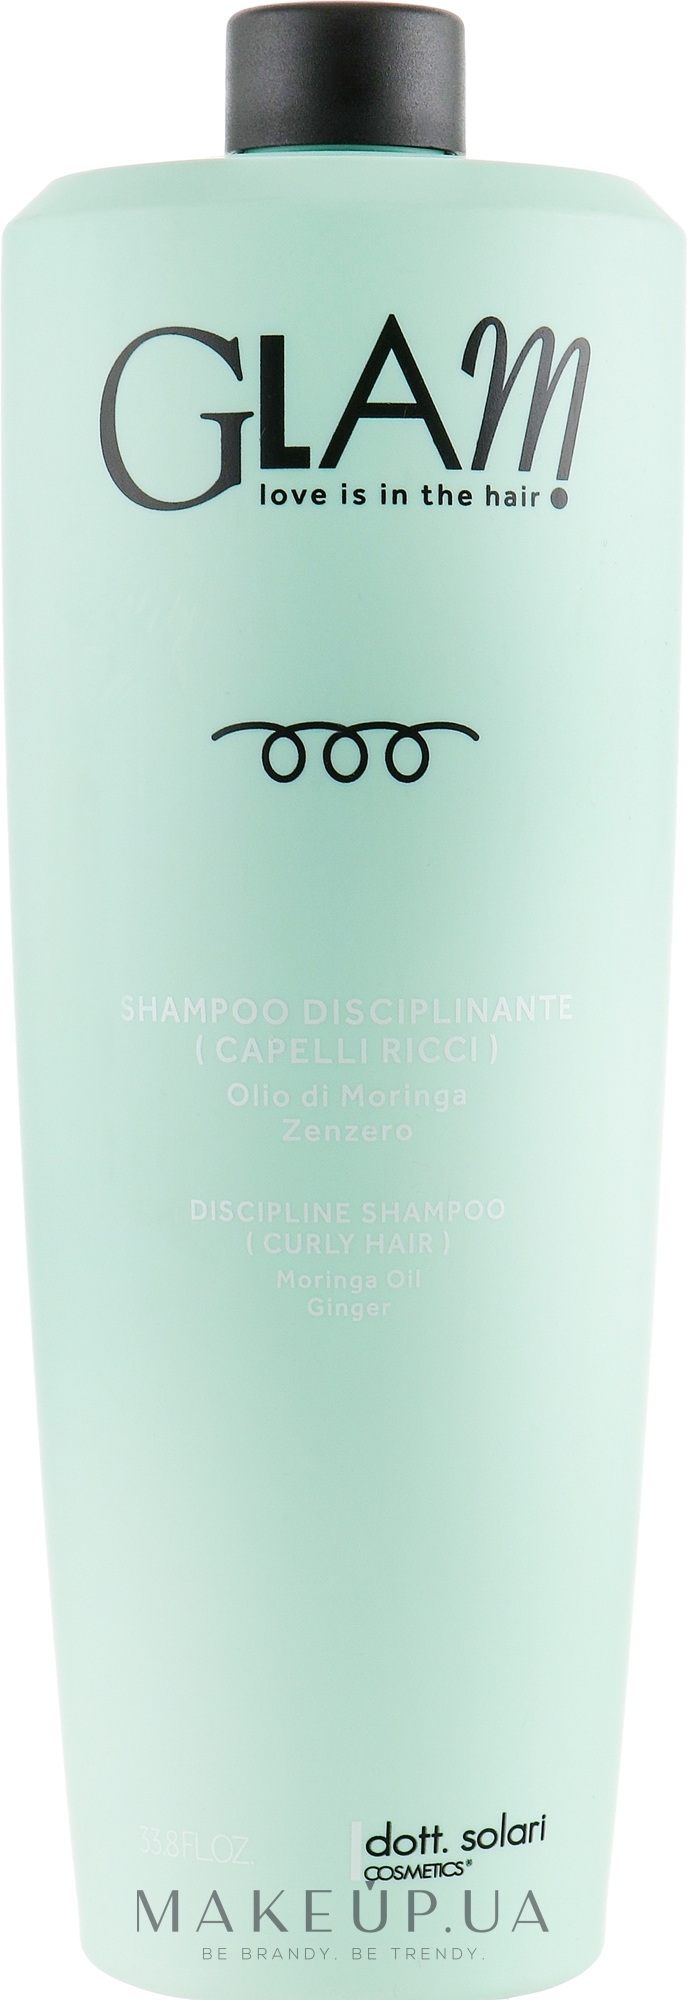 Шампунь дисциплинирующий для вьющихся волос - Dott. Solari Glam Discipline Shampoo Curly Hair — фото 1000ml